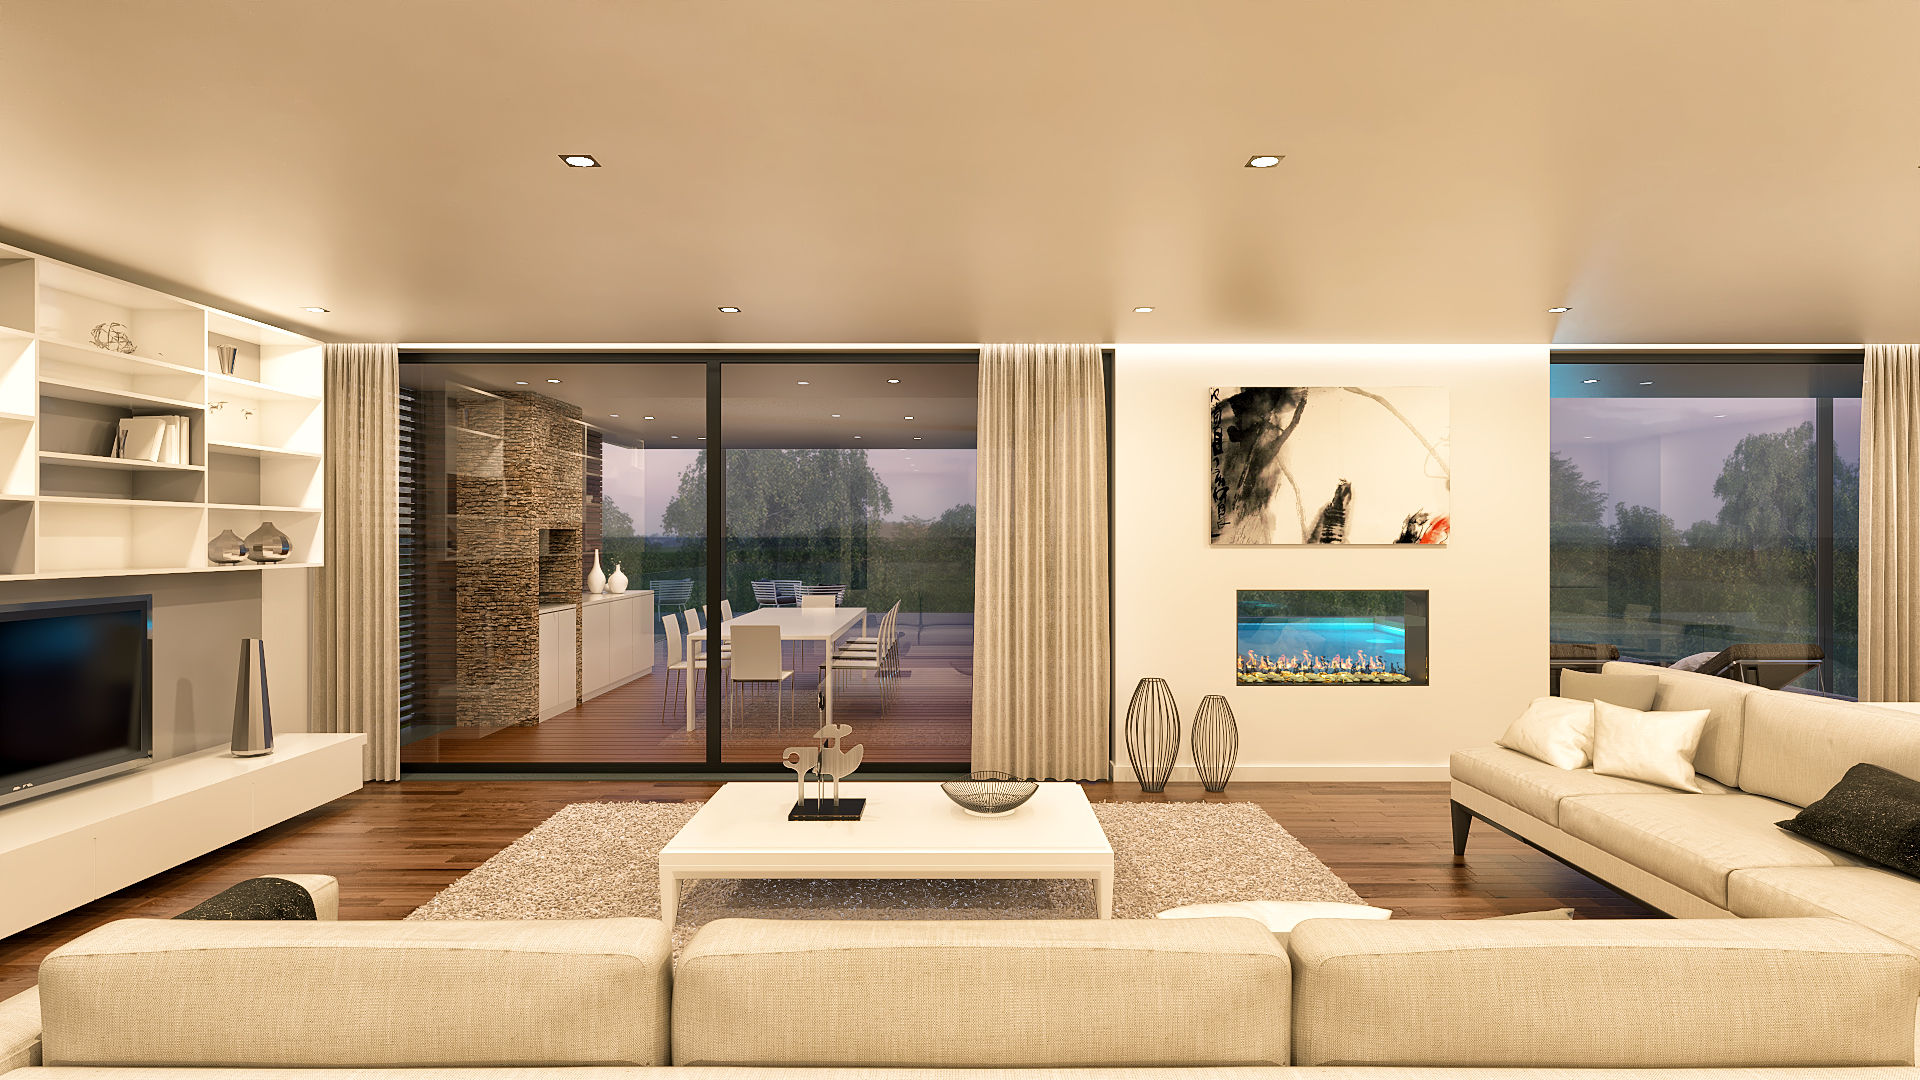 Moradia CS1 - 680 m² em Cascais, Traçado Regulador. Lda Traçado Regulador. Lda Modern living room Wood Wood effect